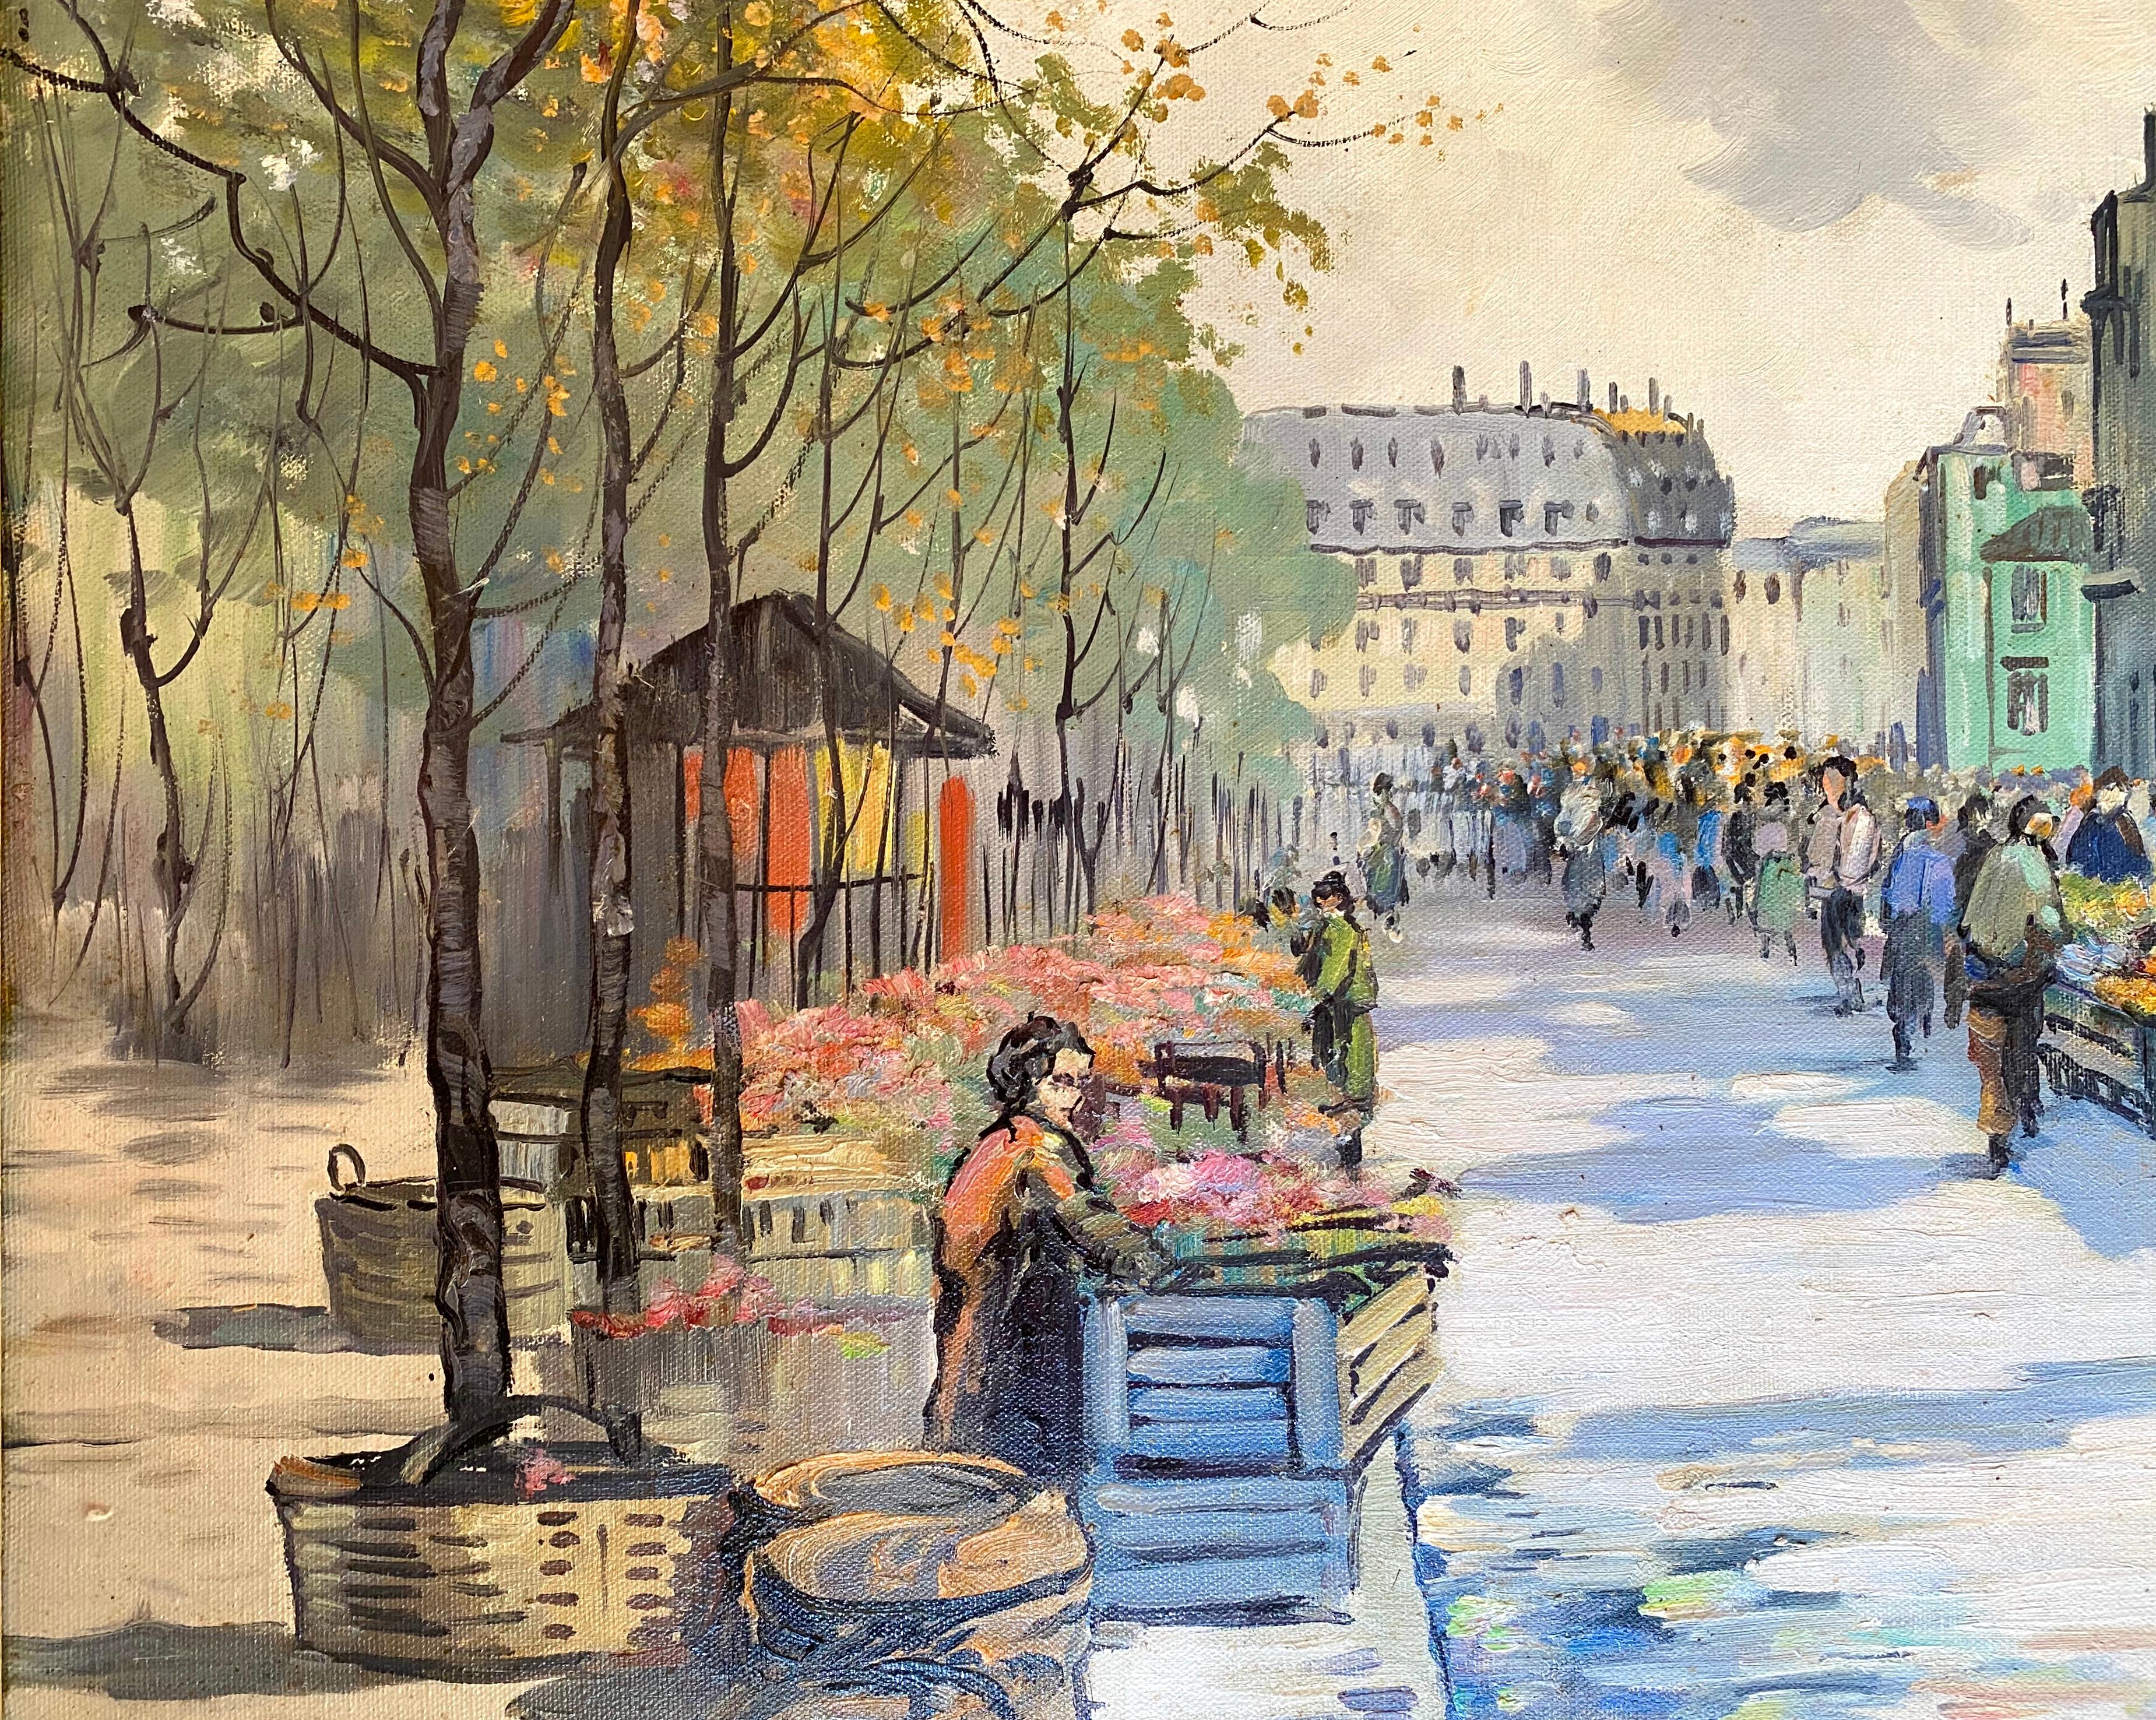 “Les Halles de Paris” - Post-Impressionist Painting by H. F. Root